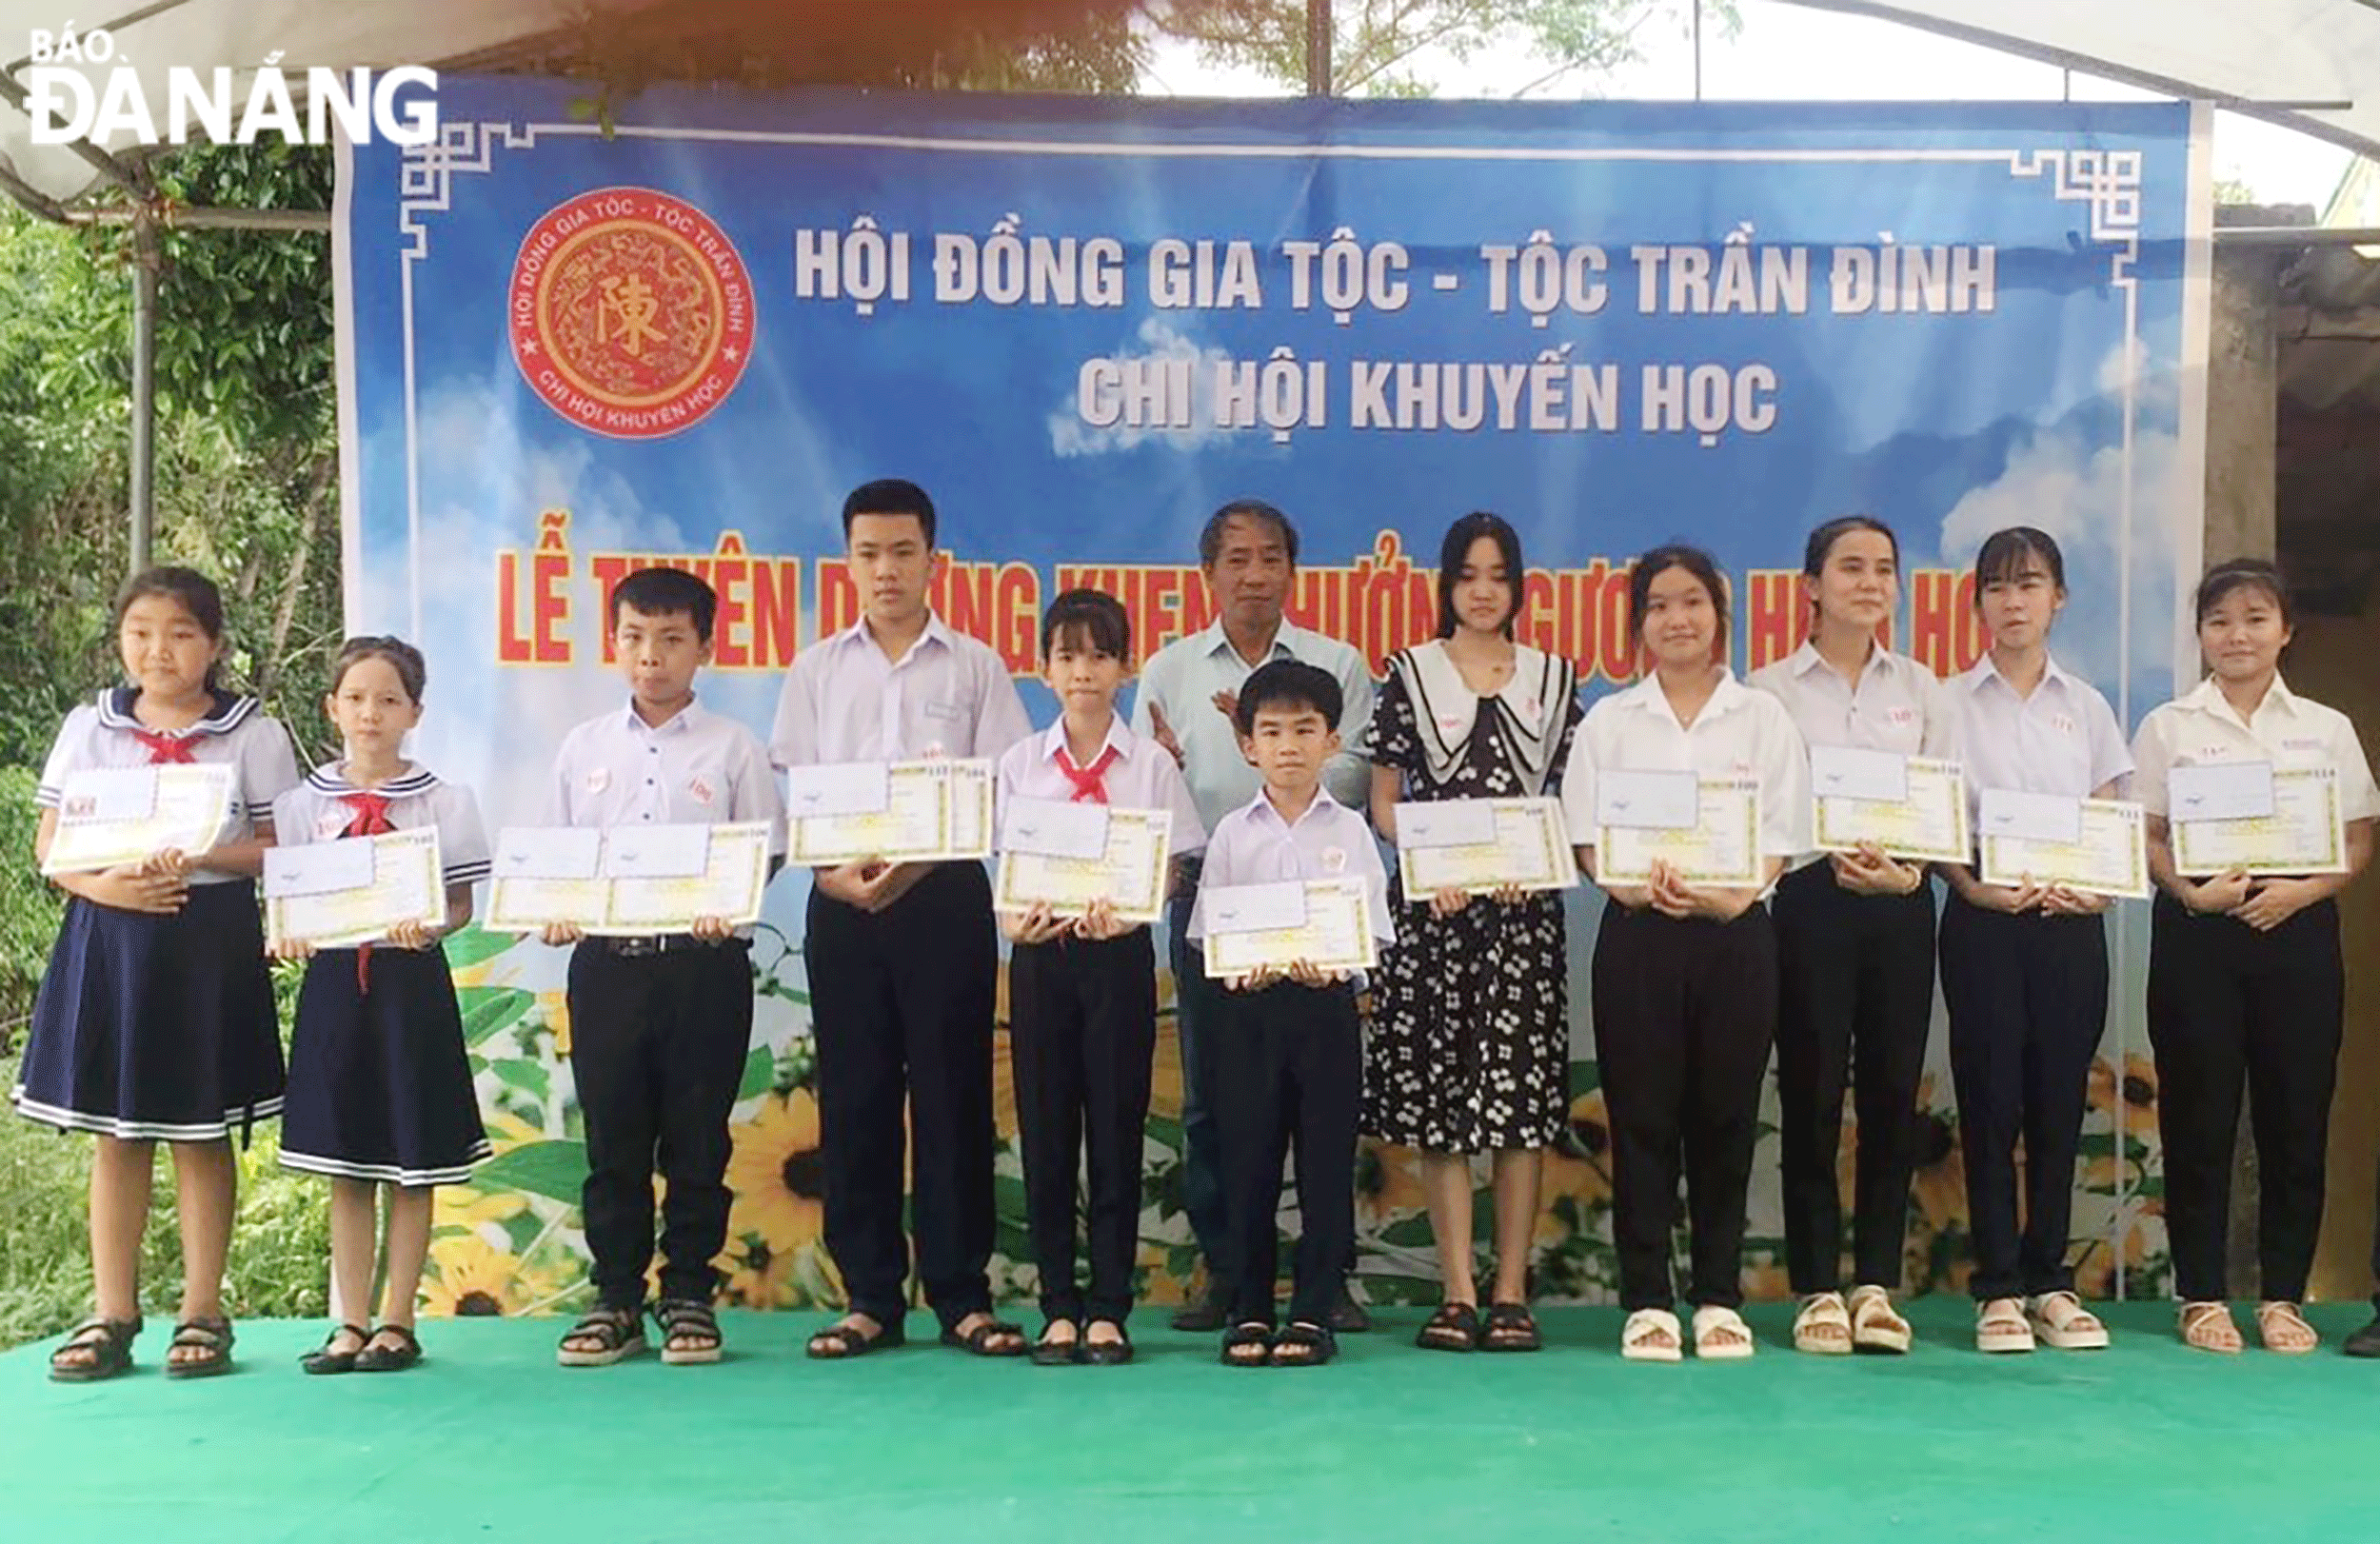 Chi hội khuyến học tộc Trần Đình thôn Yến Nê tuyên dương khen thưởng các gương hiếu học năm 2023. Ảnh: L.H